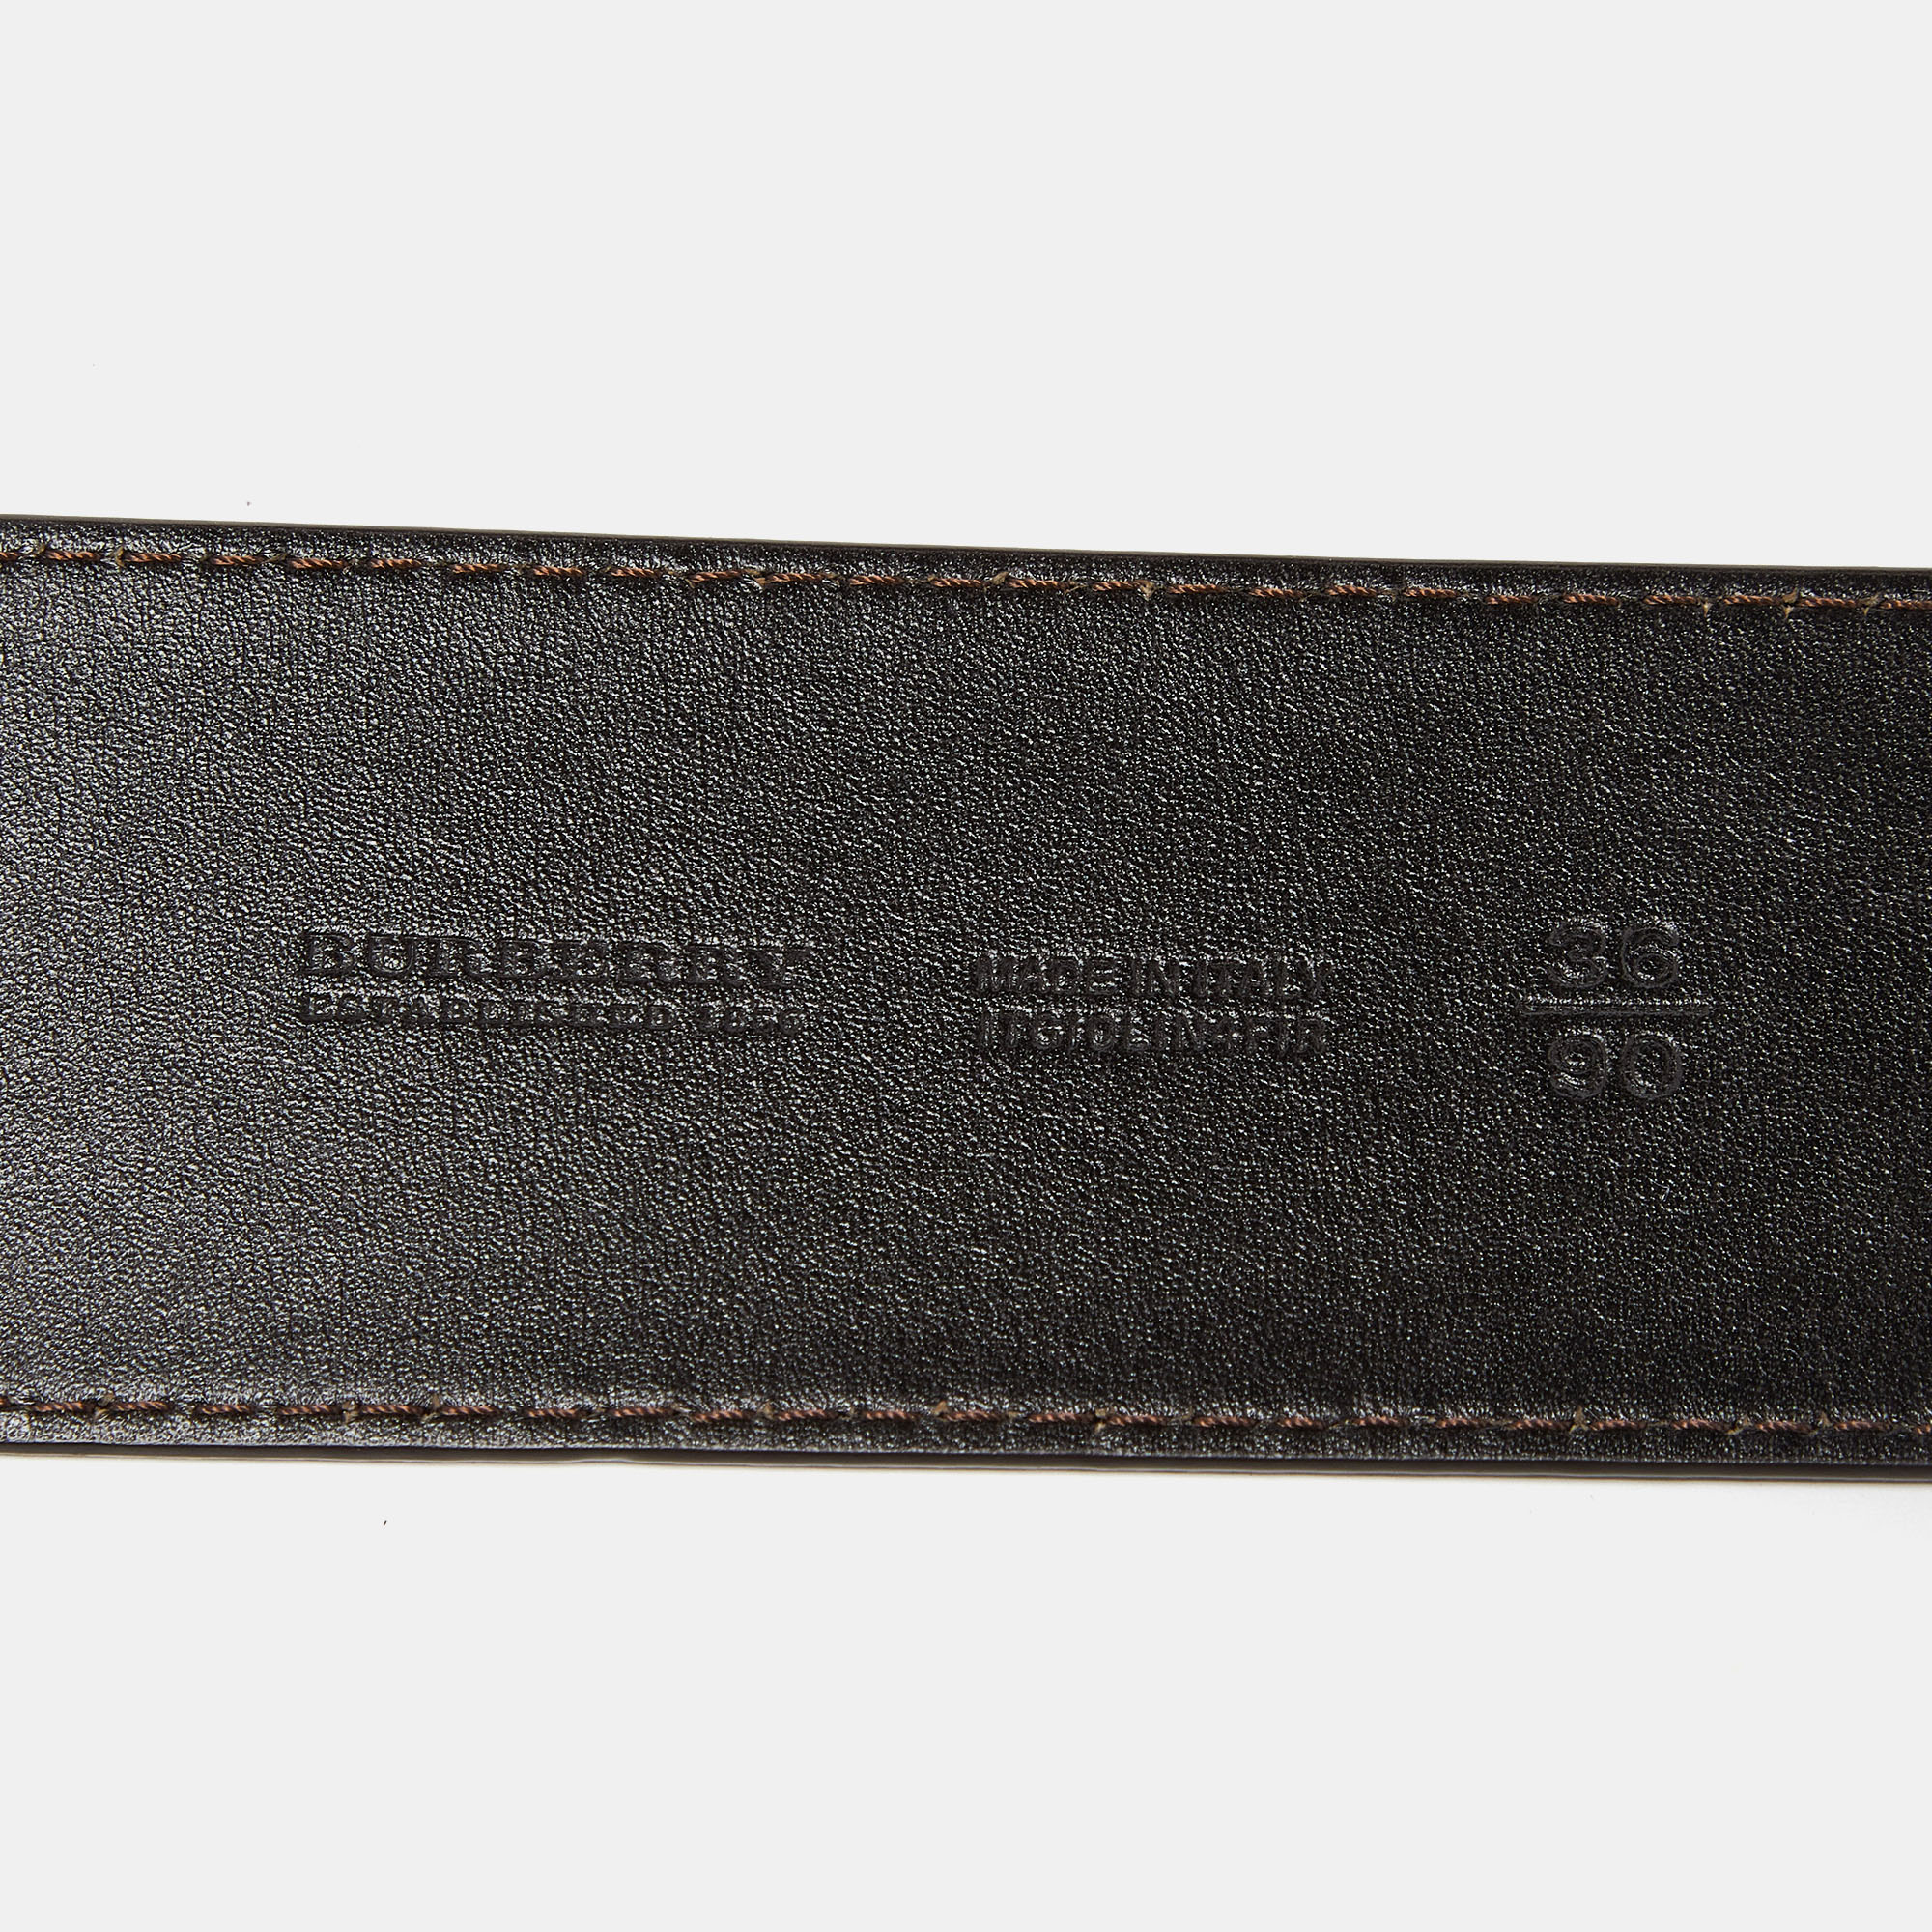 Burberry Dark Brown Leather Waist Wide Buckle Belt 90CM